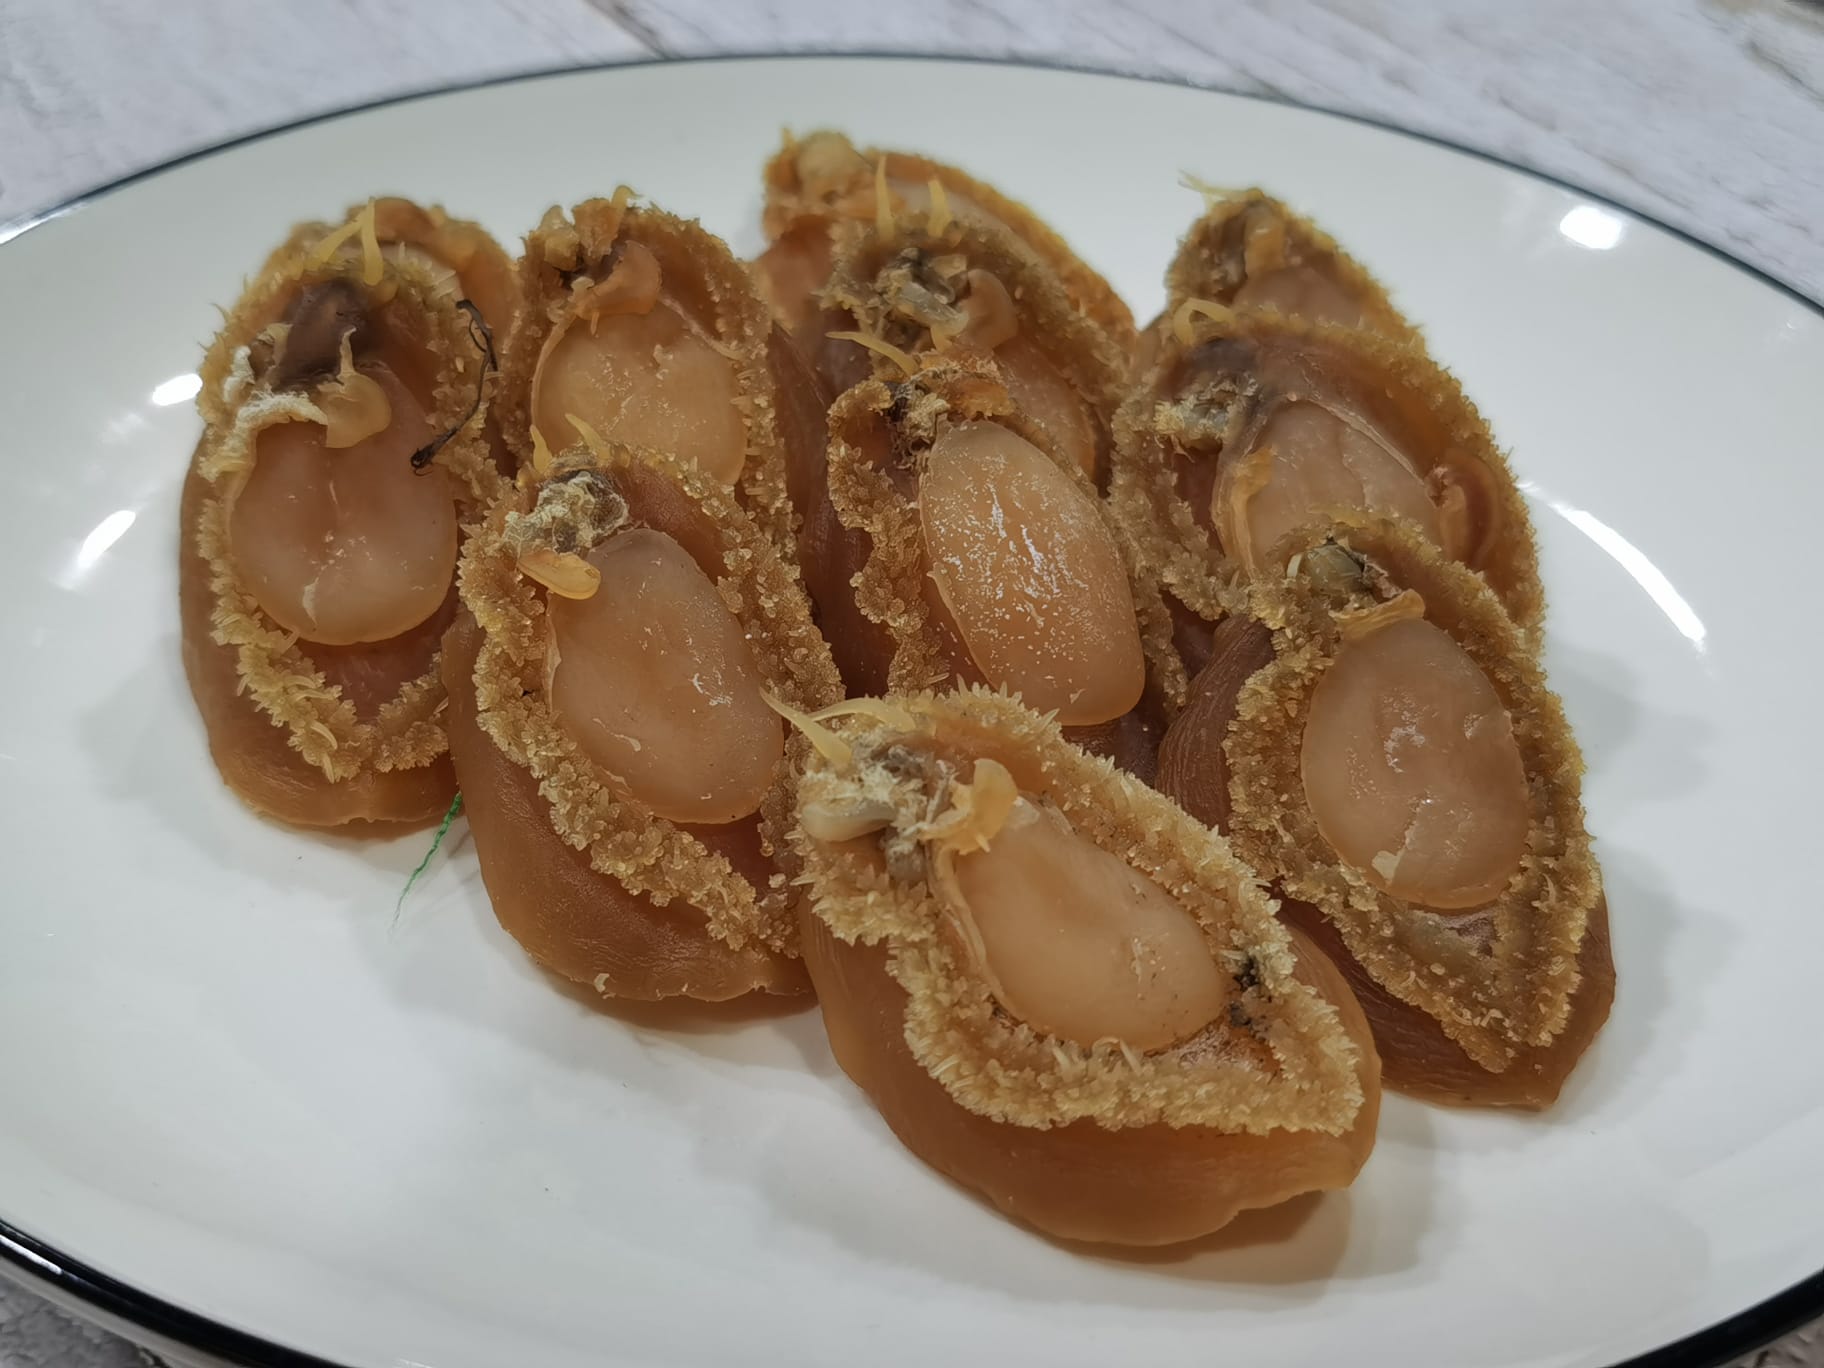 大連乾鮑魚 (36頭) Dried Abalone From Dalian